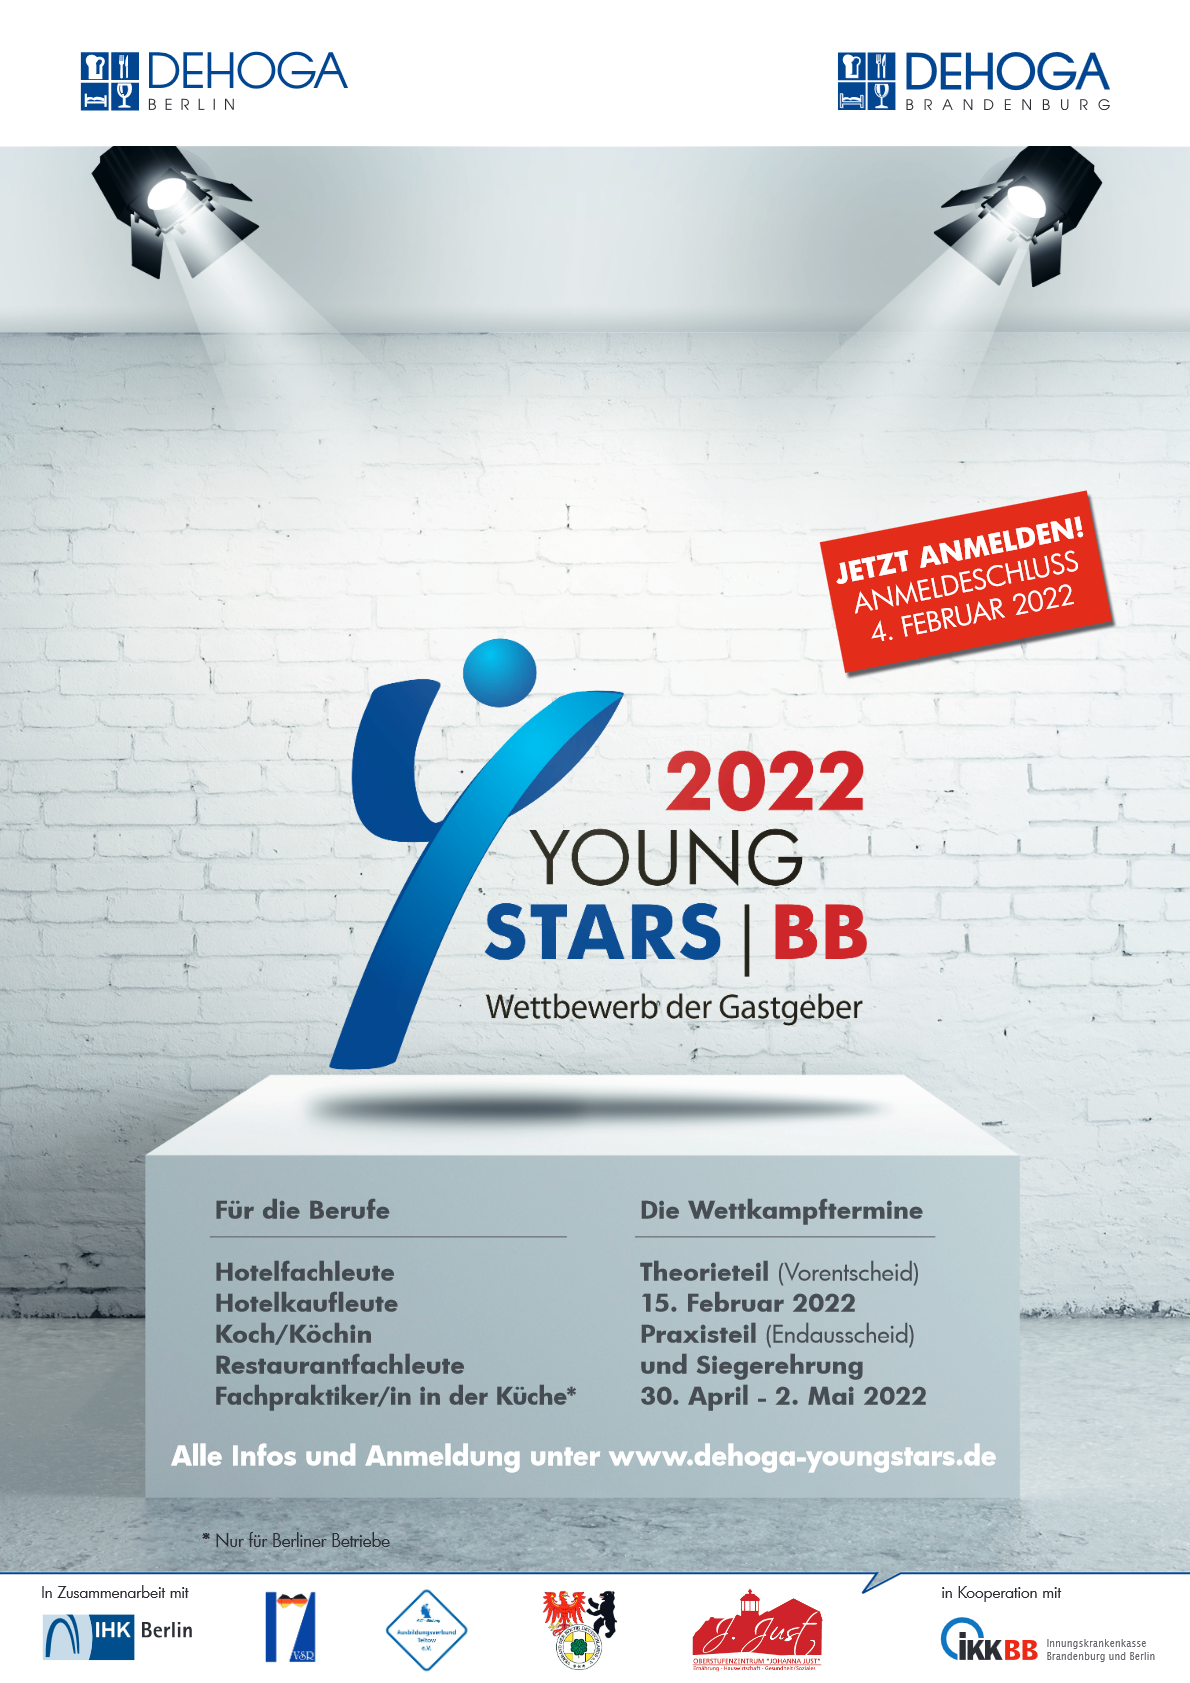 YoungStars BB – Wettbewerb der Gastgeber 2022